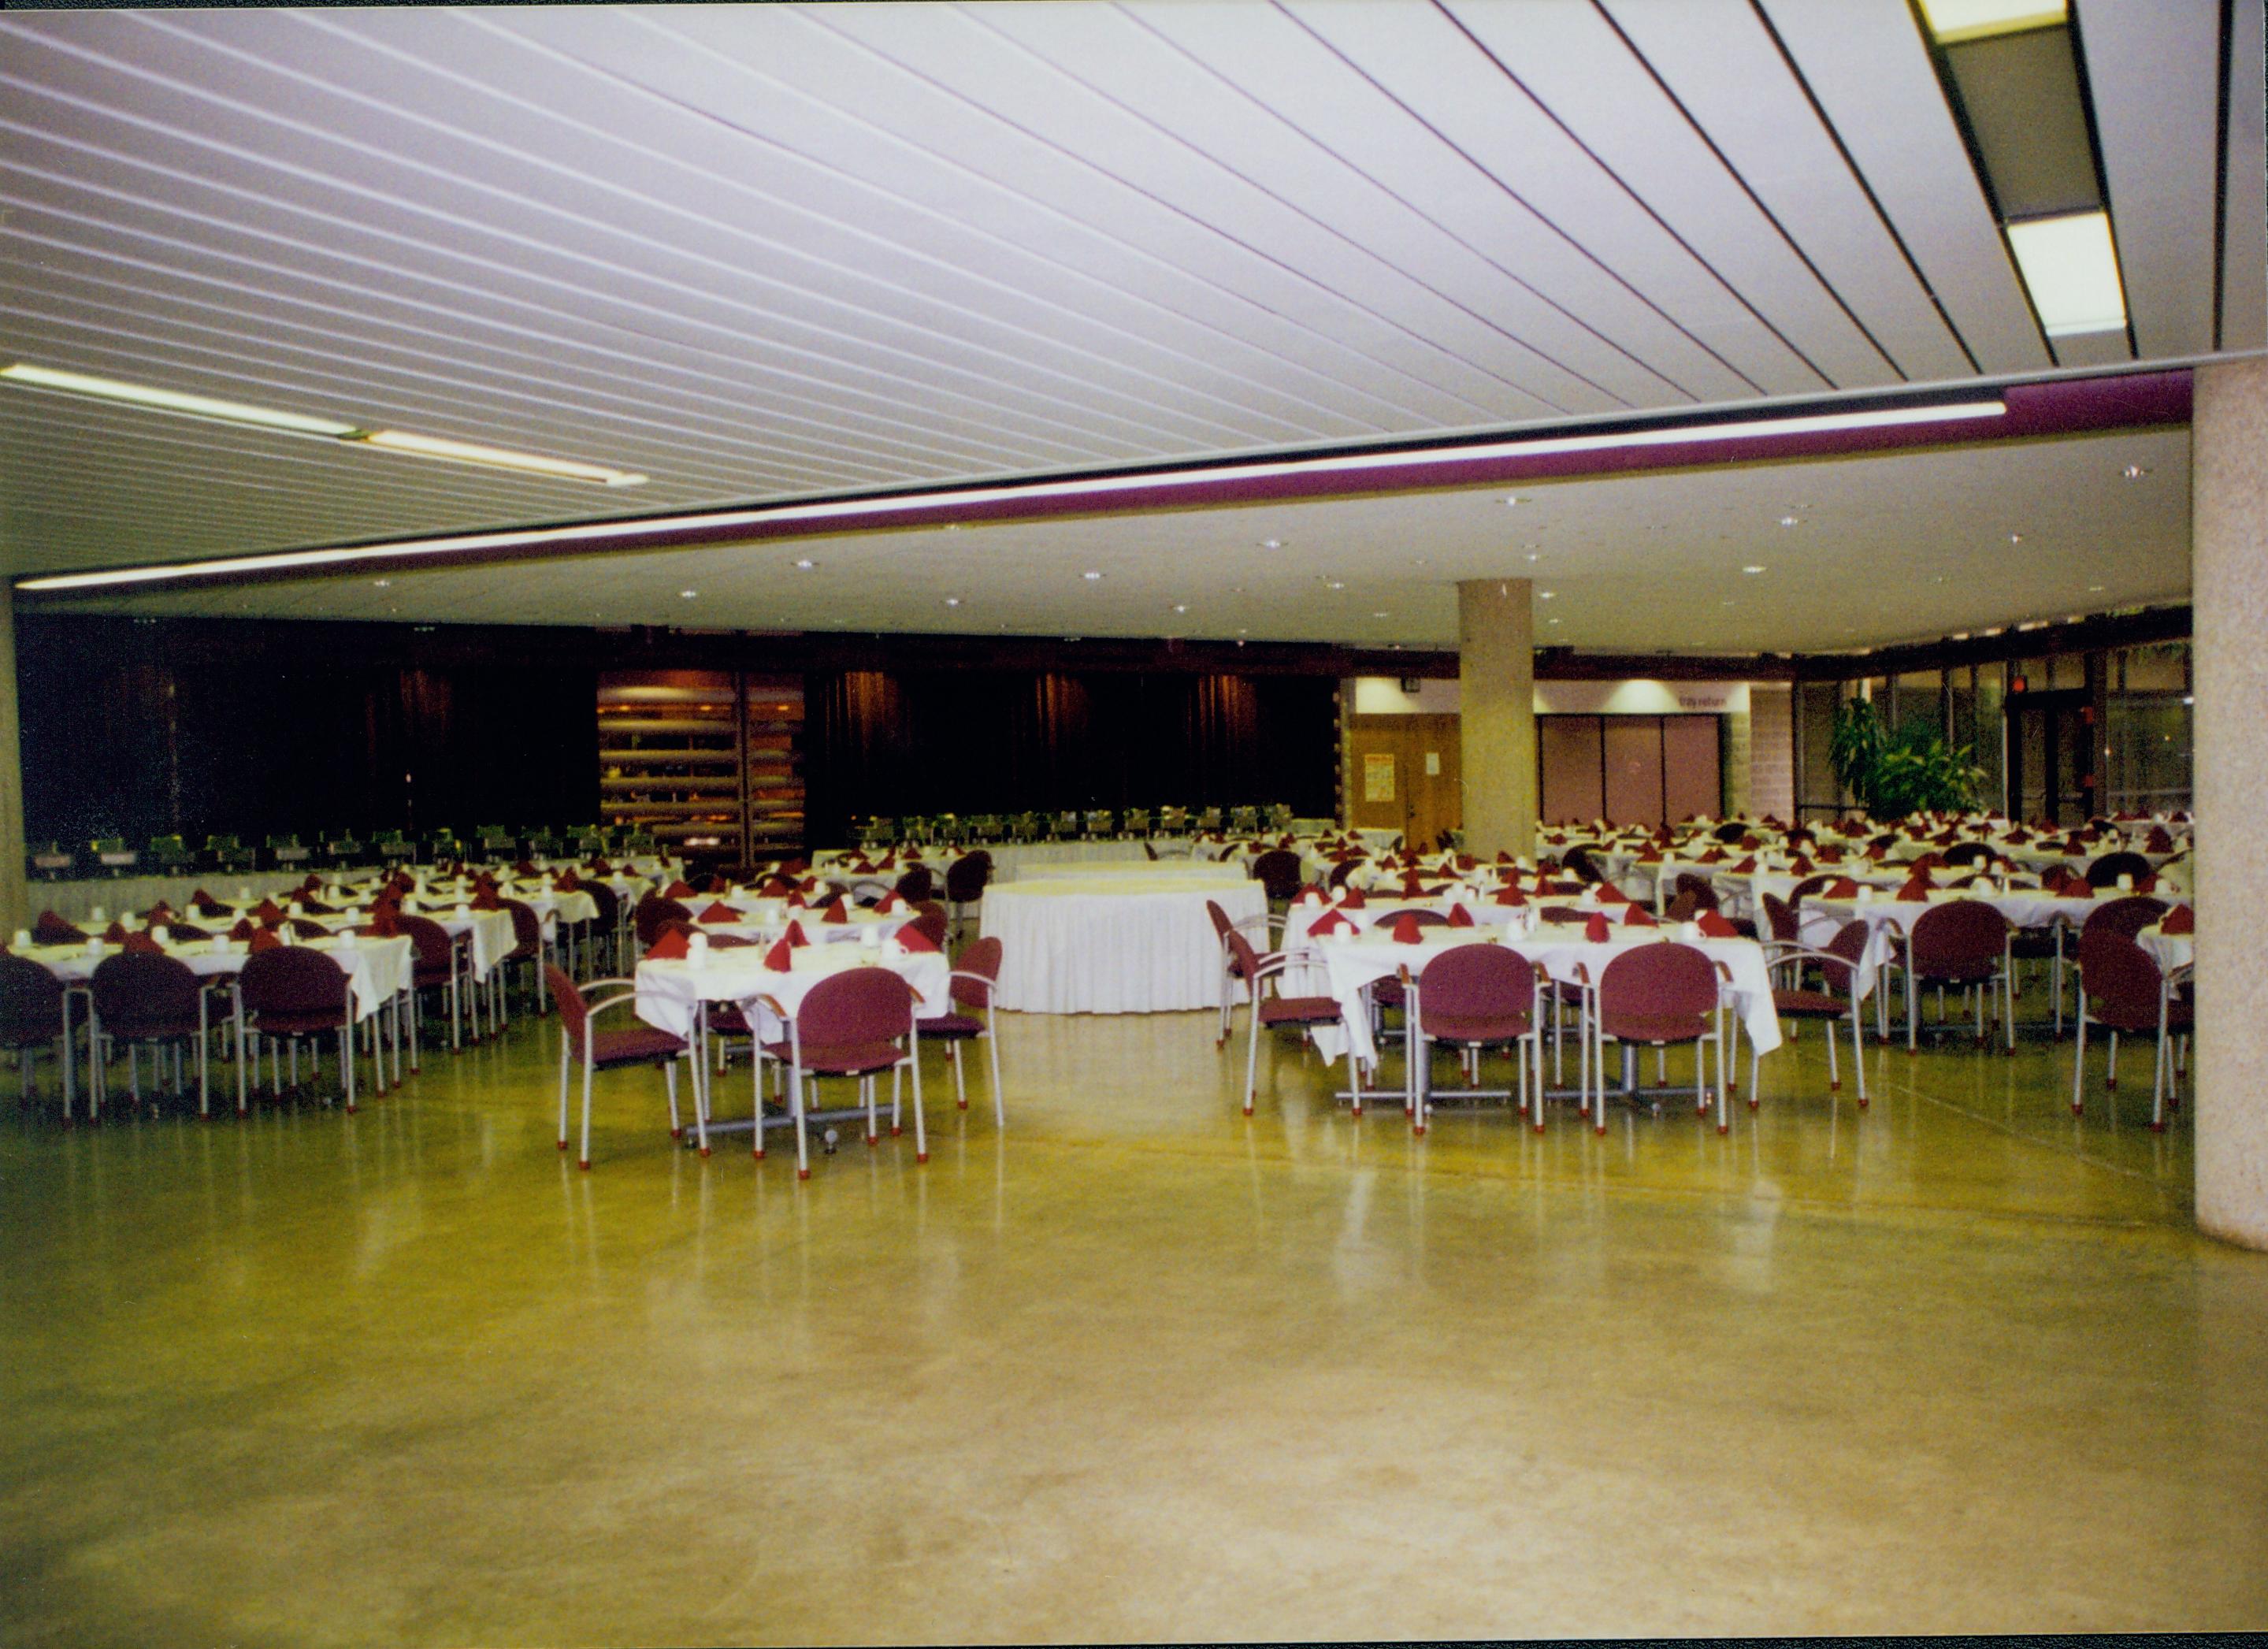 Dining set-up 5-1997 Colloq (color); 32 Colloquium, 1997